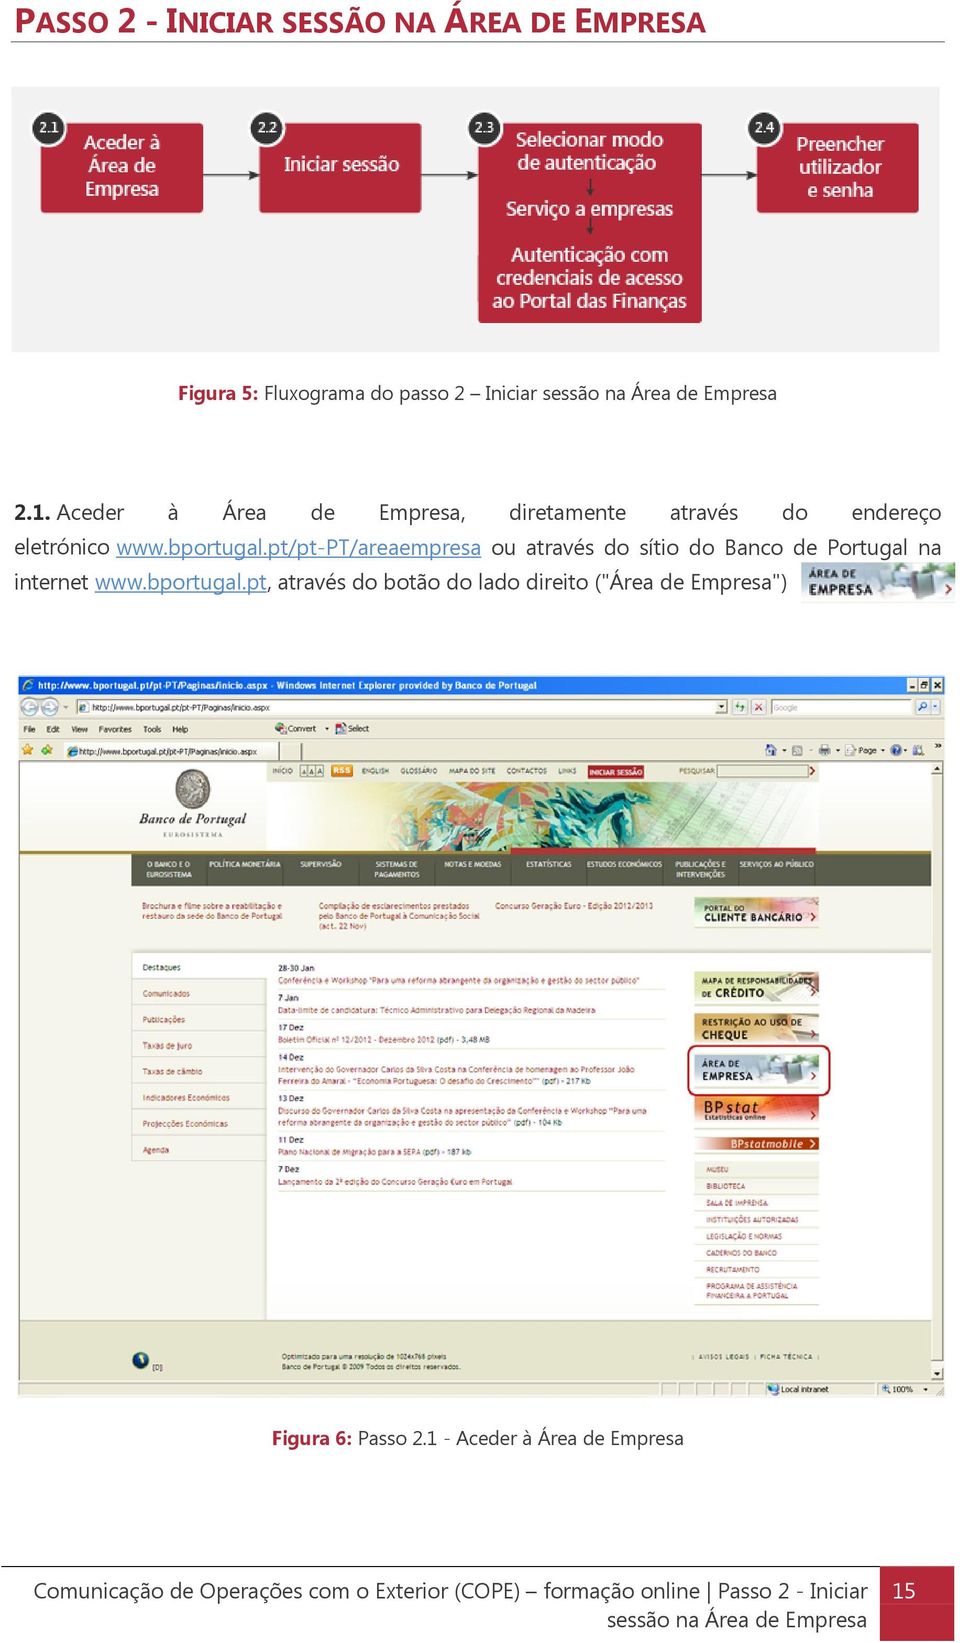 pt/pt-pt/areaempresa ou através do sítio do Banco de Portugal na internet www.bportugal.